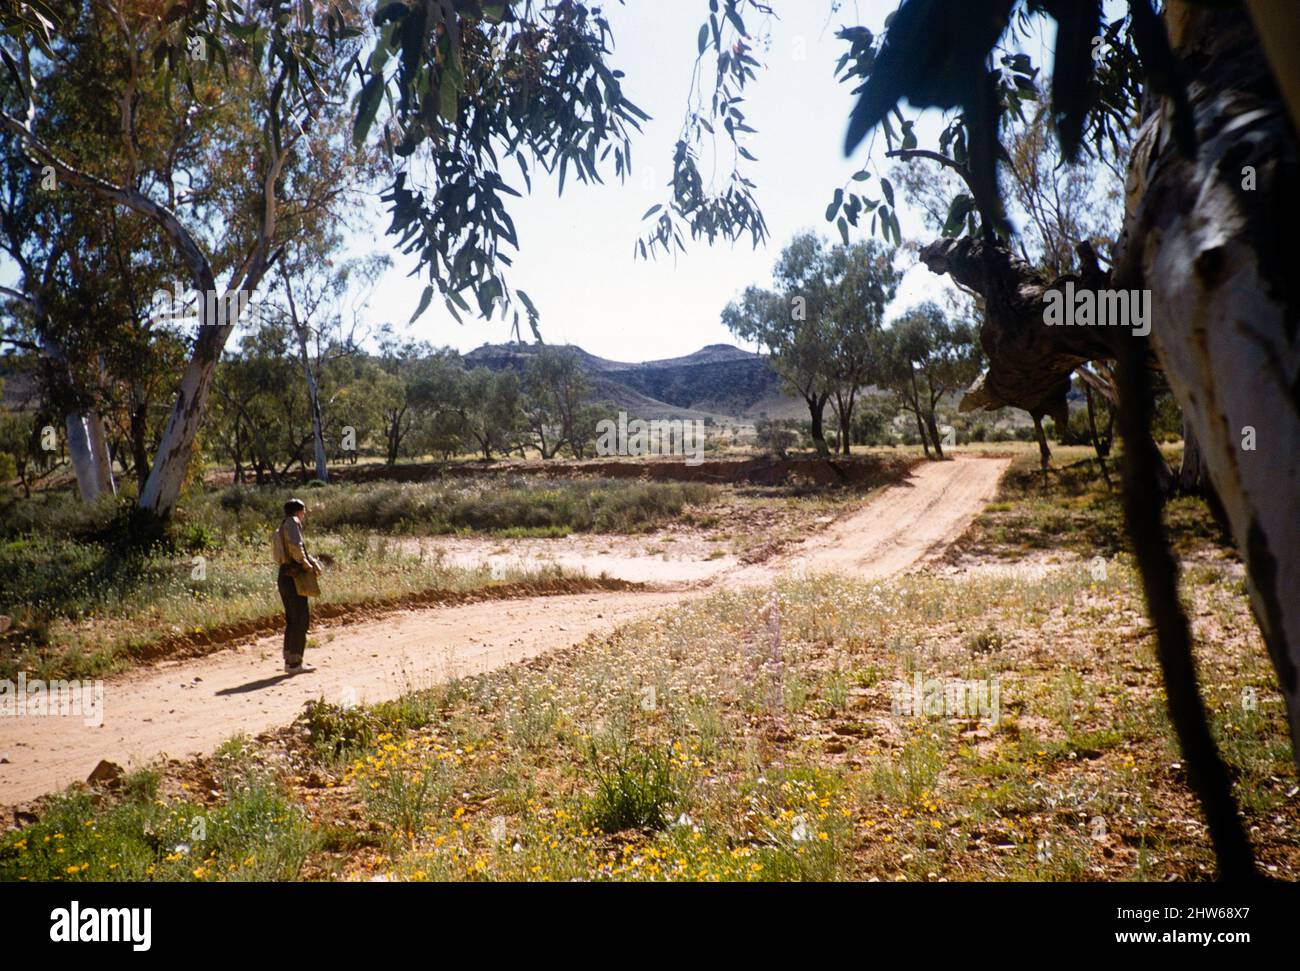 Melbourne Grammar School Expedition, Northern Territory, Australien im Jahr 1956 Outback Landschaft und unbefestigte Straße, nicht näher bezeichnete Lage Stockfoto